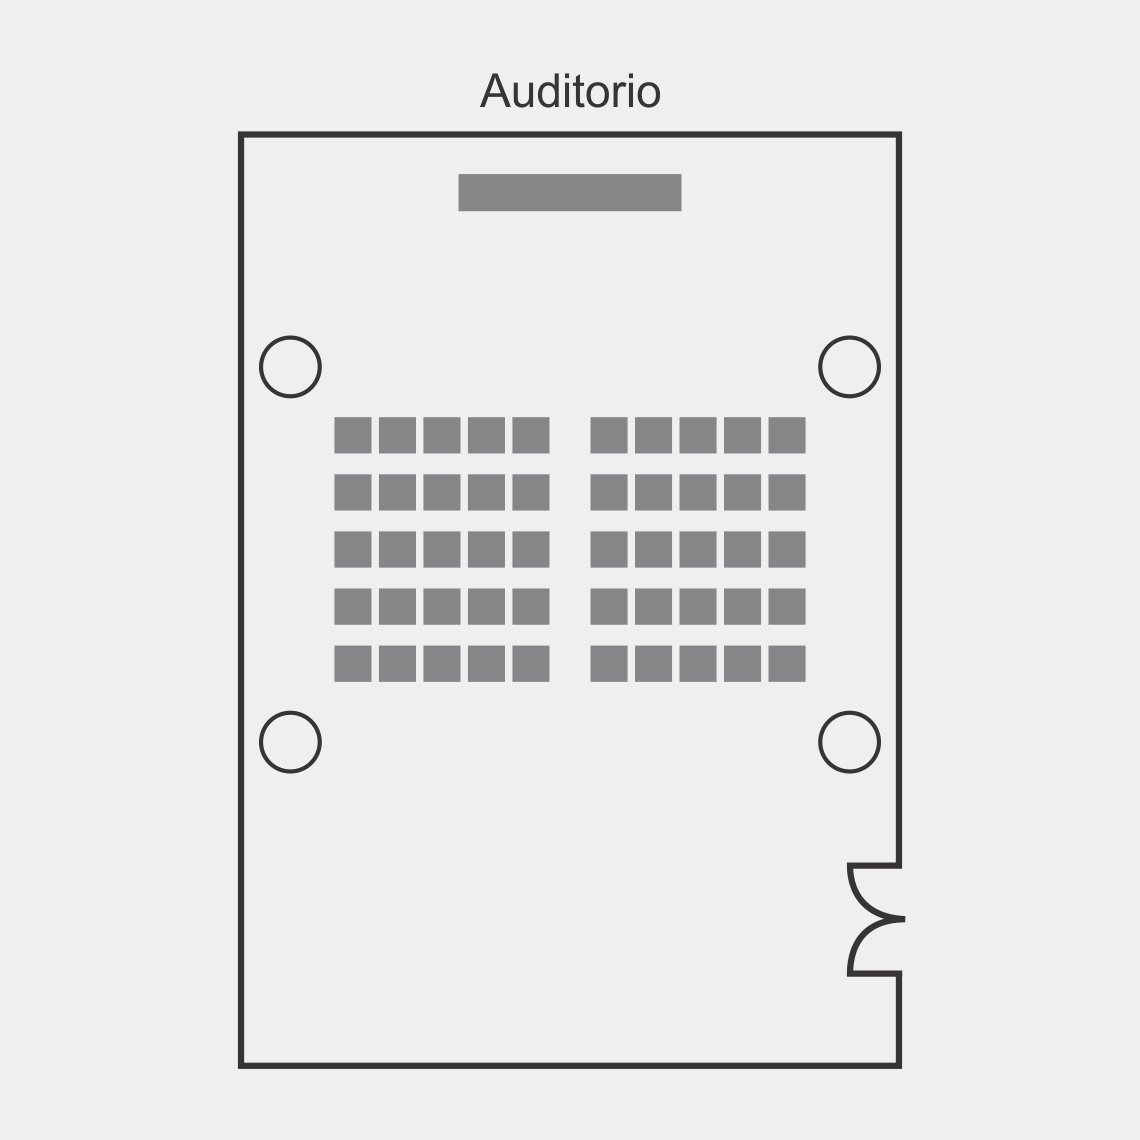 Foto del plano de sala de Eventos forma Auditorio